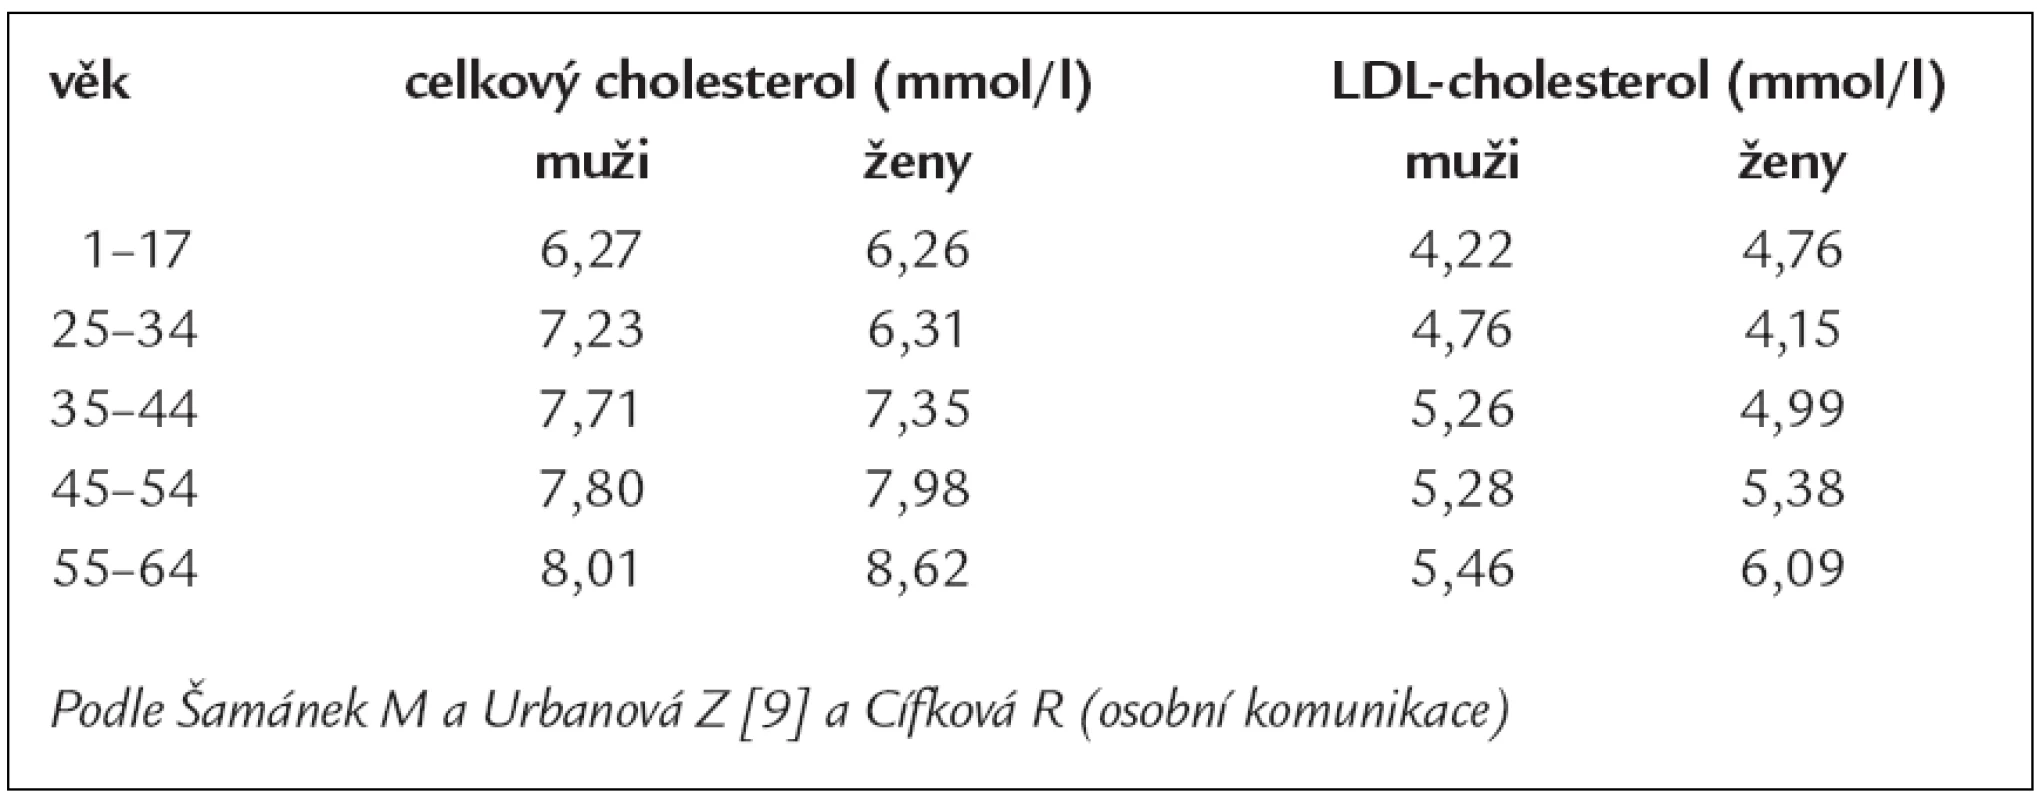 Hodnoty 95. percentilu pro celkový a LDL-cholesterol specifické pro českou populaci podle věku a pohlaví.